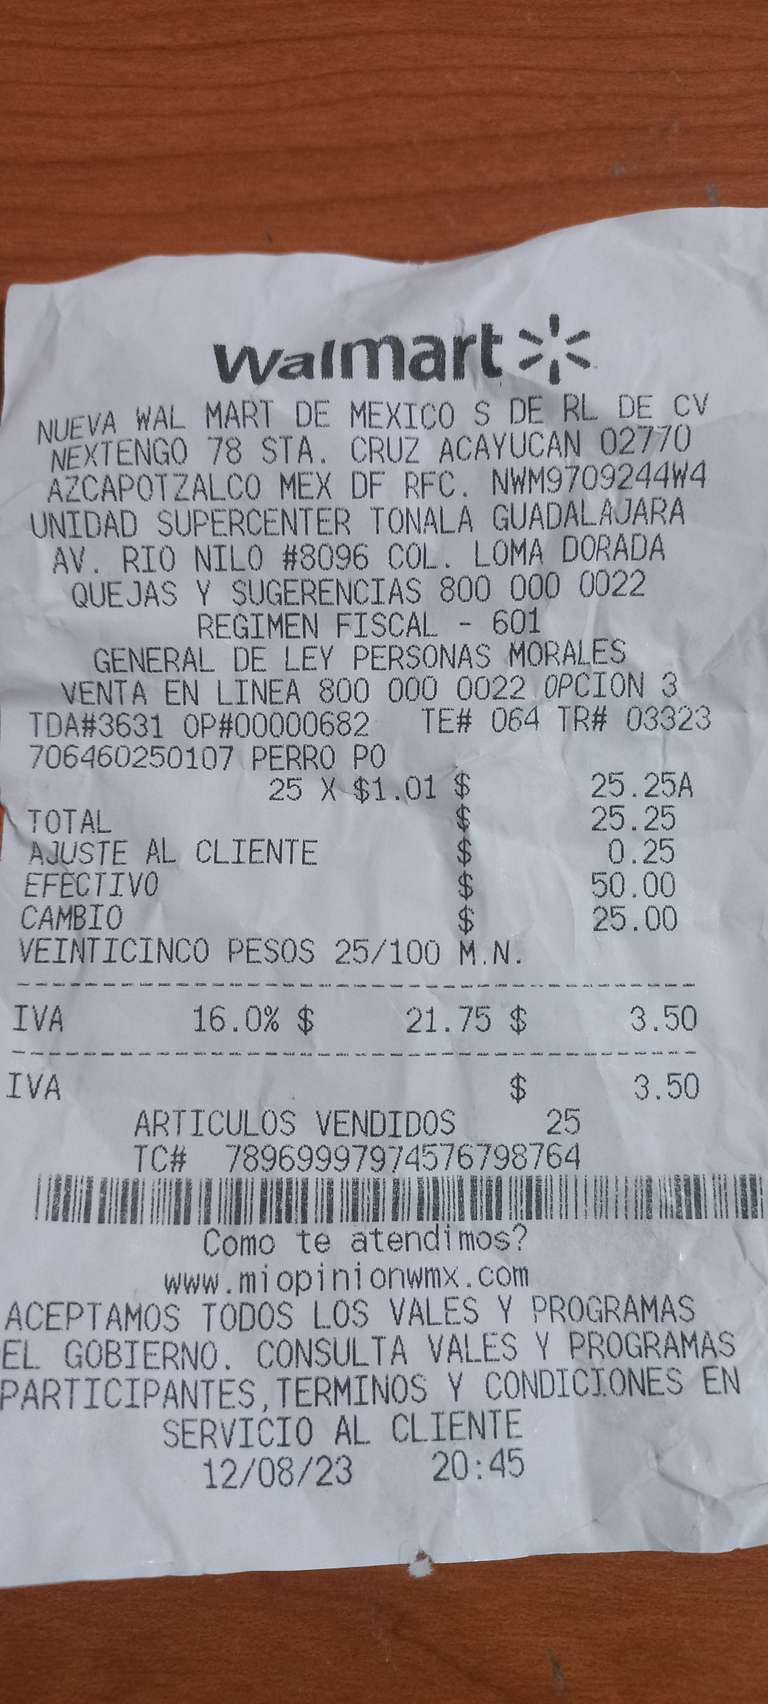 Walmart sobre de alimento para mascota cesar 1.01 pesos - jalisco